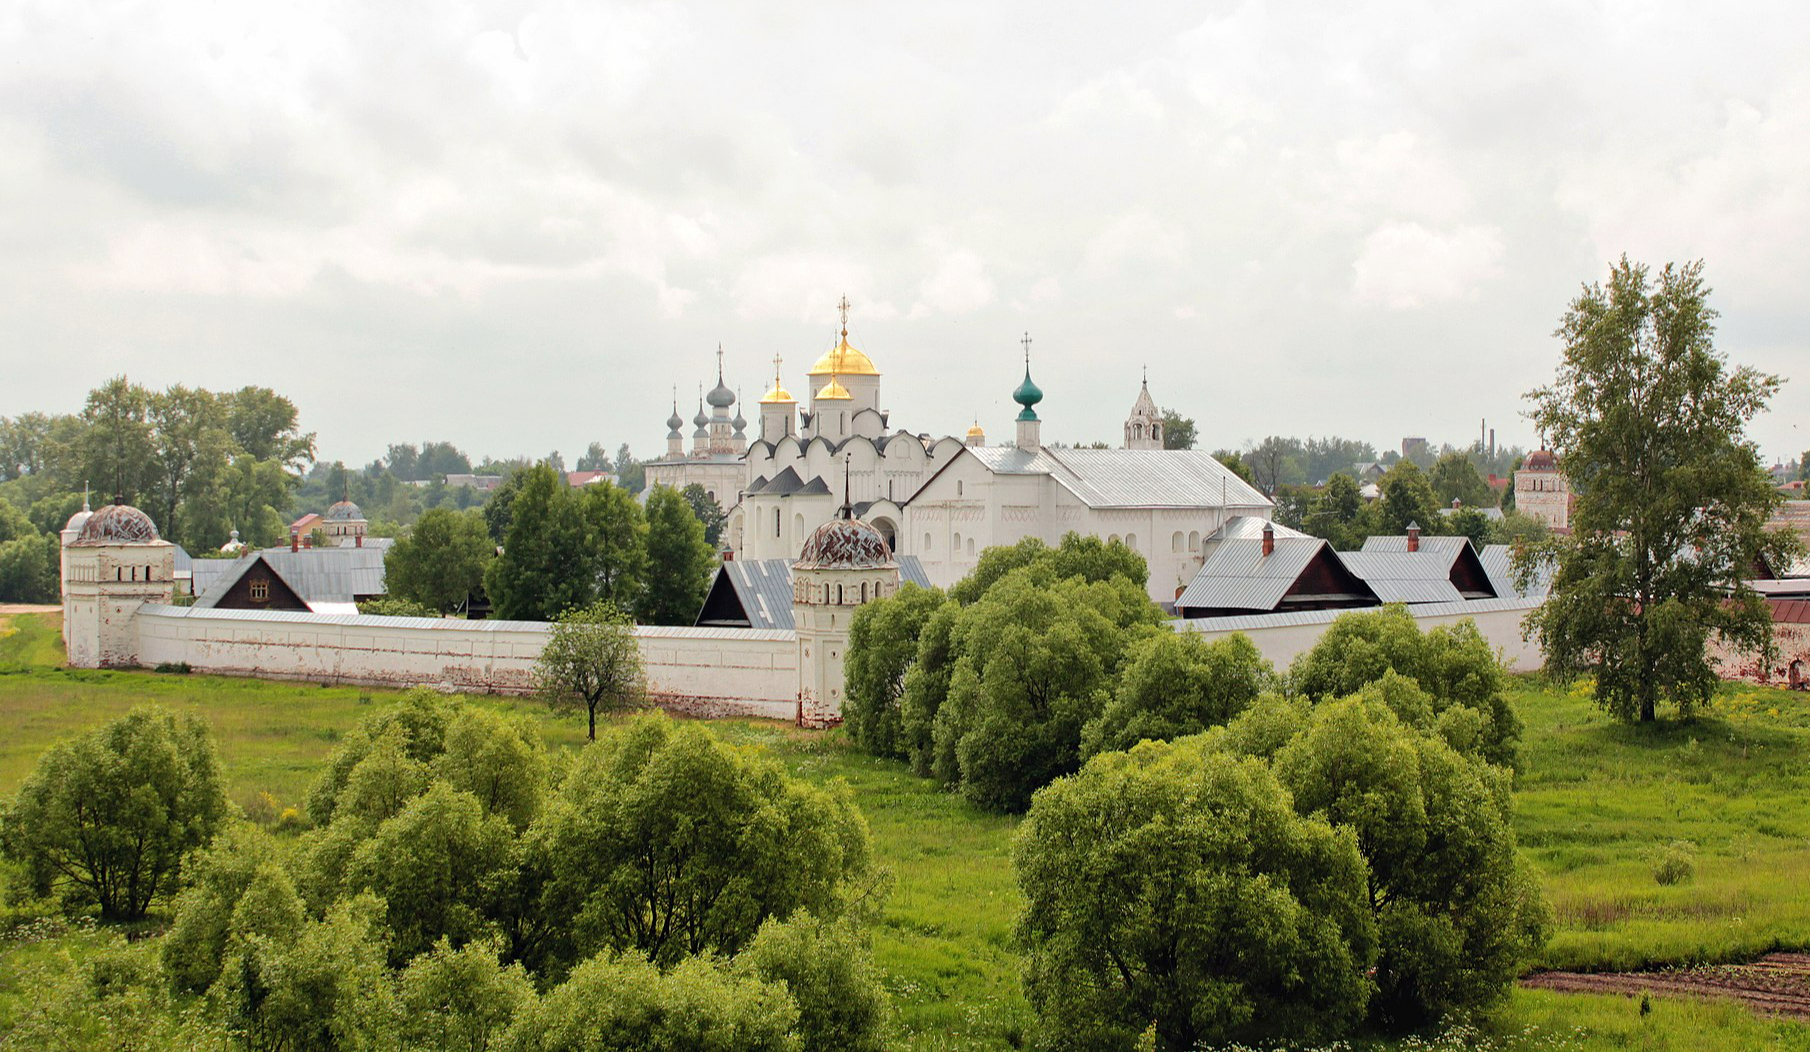 Покровский монастырь основал князь Дмитрий Константинович в 1364 году